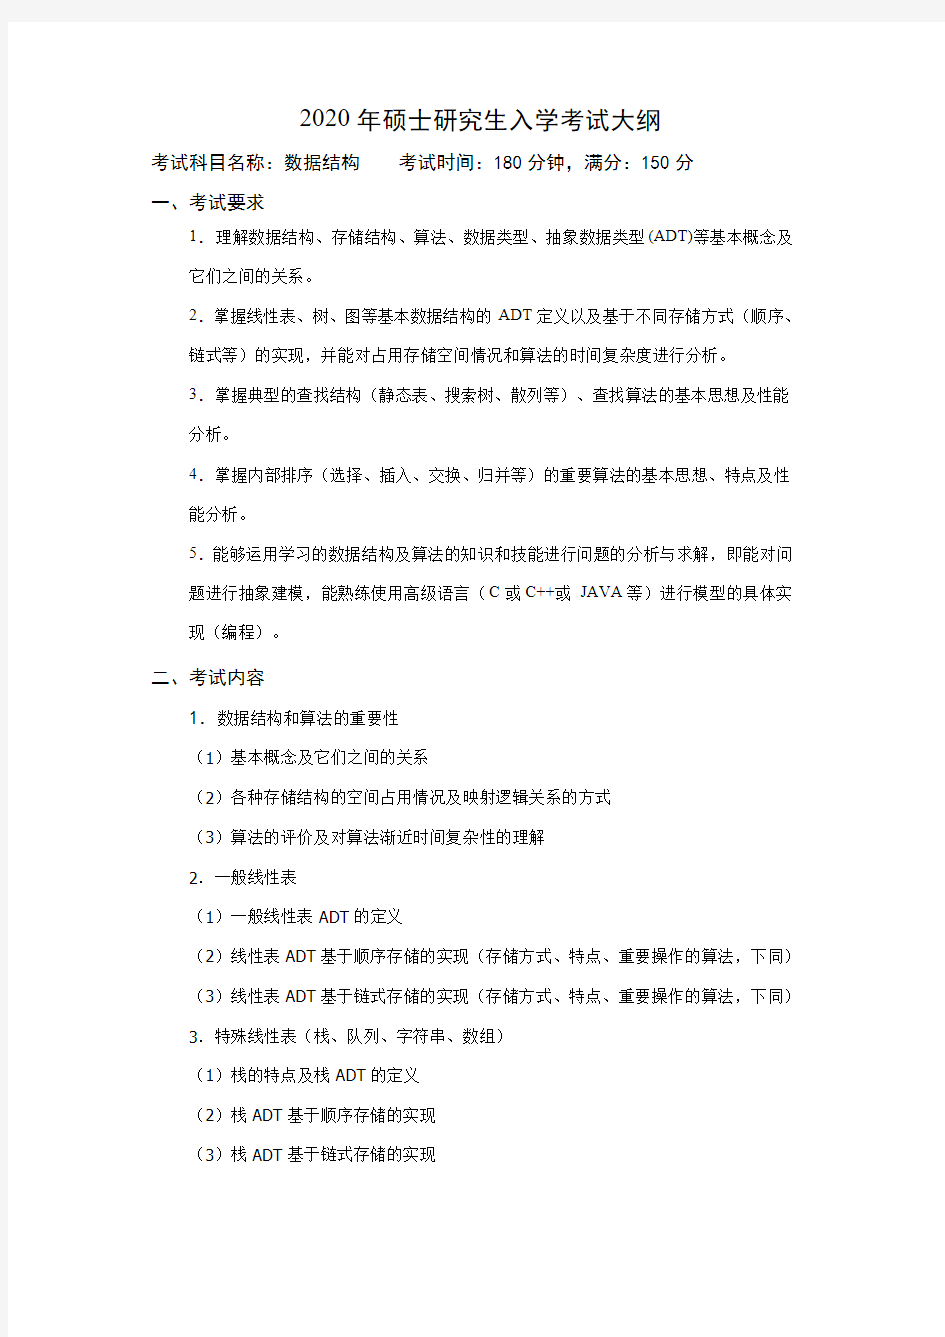 中国石油大学(北京)859数据结构2020年考研专业课初试大纲